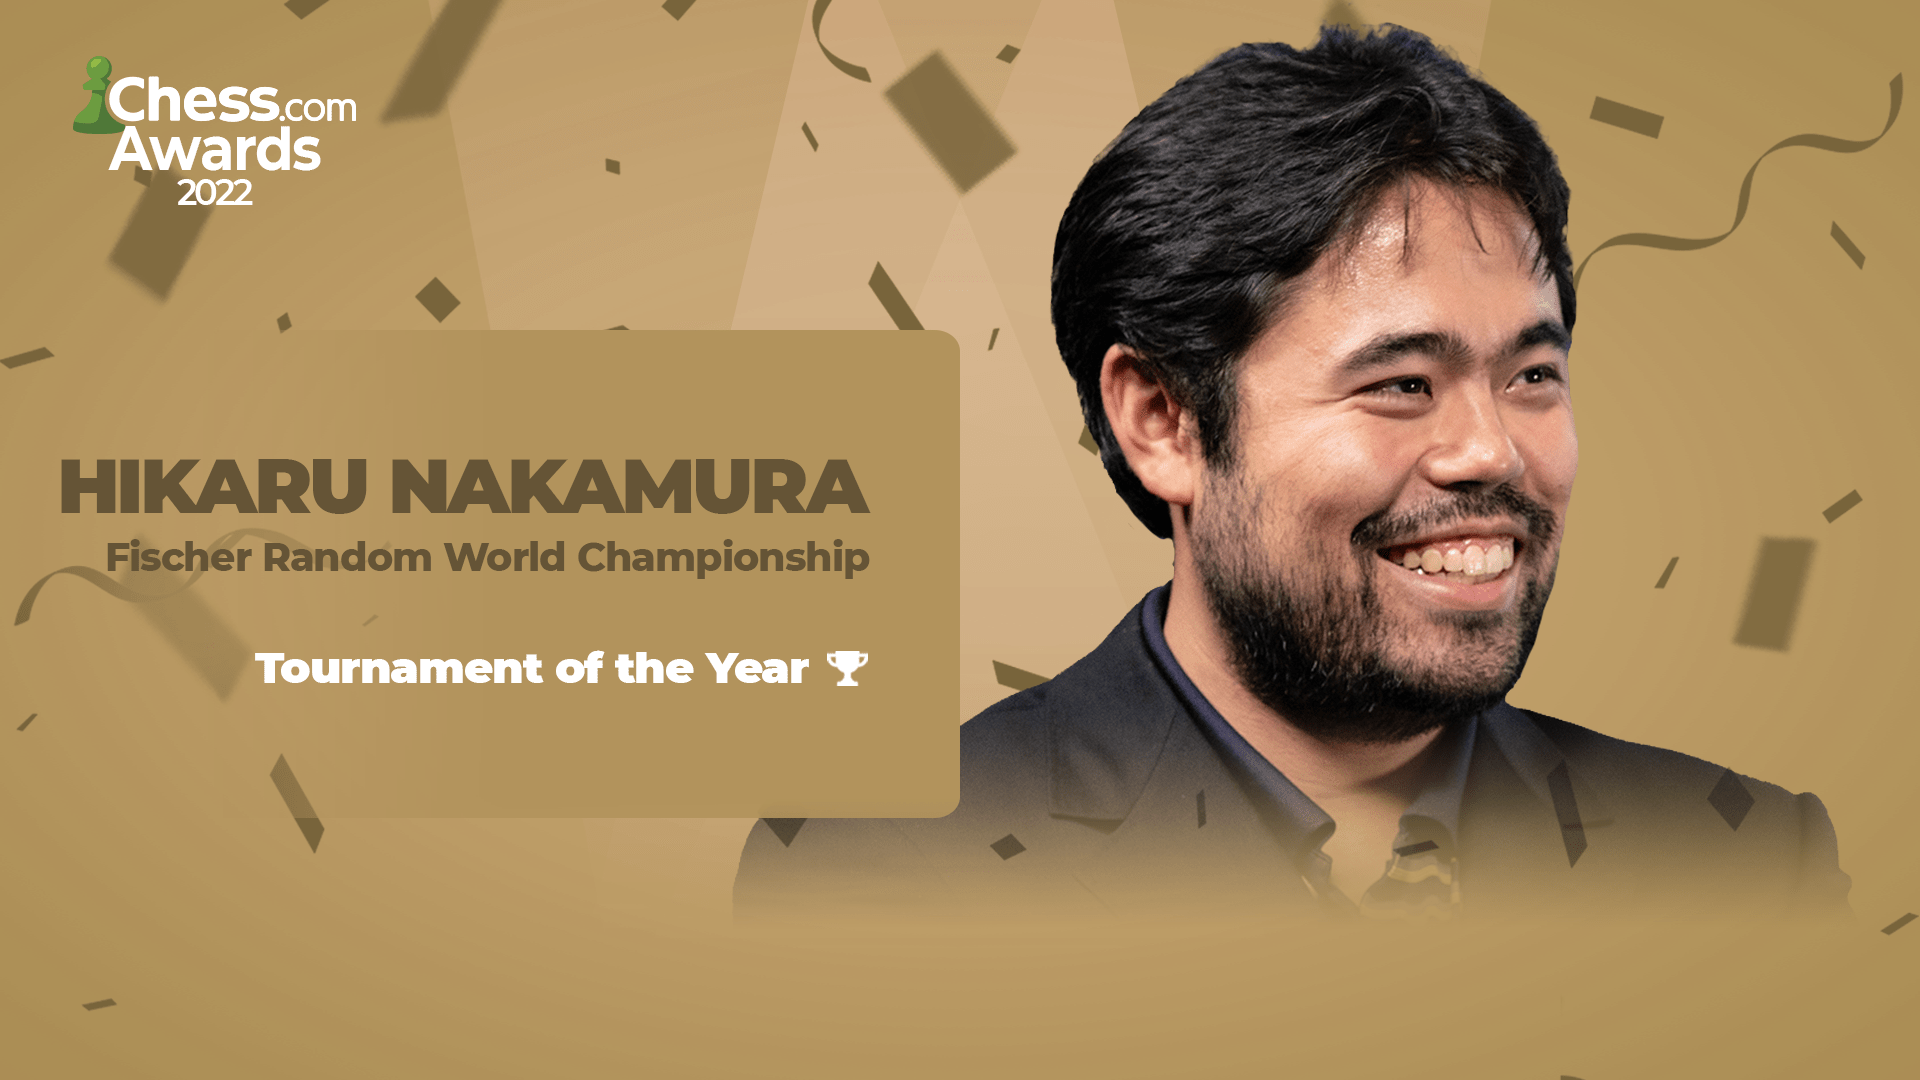 2022 Chess.com Awards Winners Tournament Performance of the Year Hikaru Nakamura